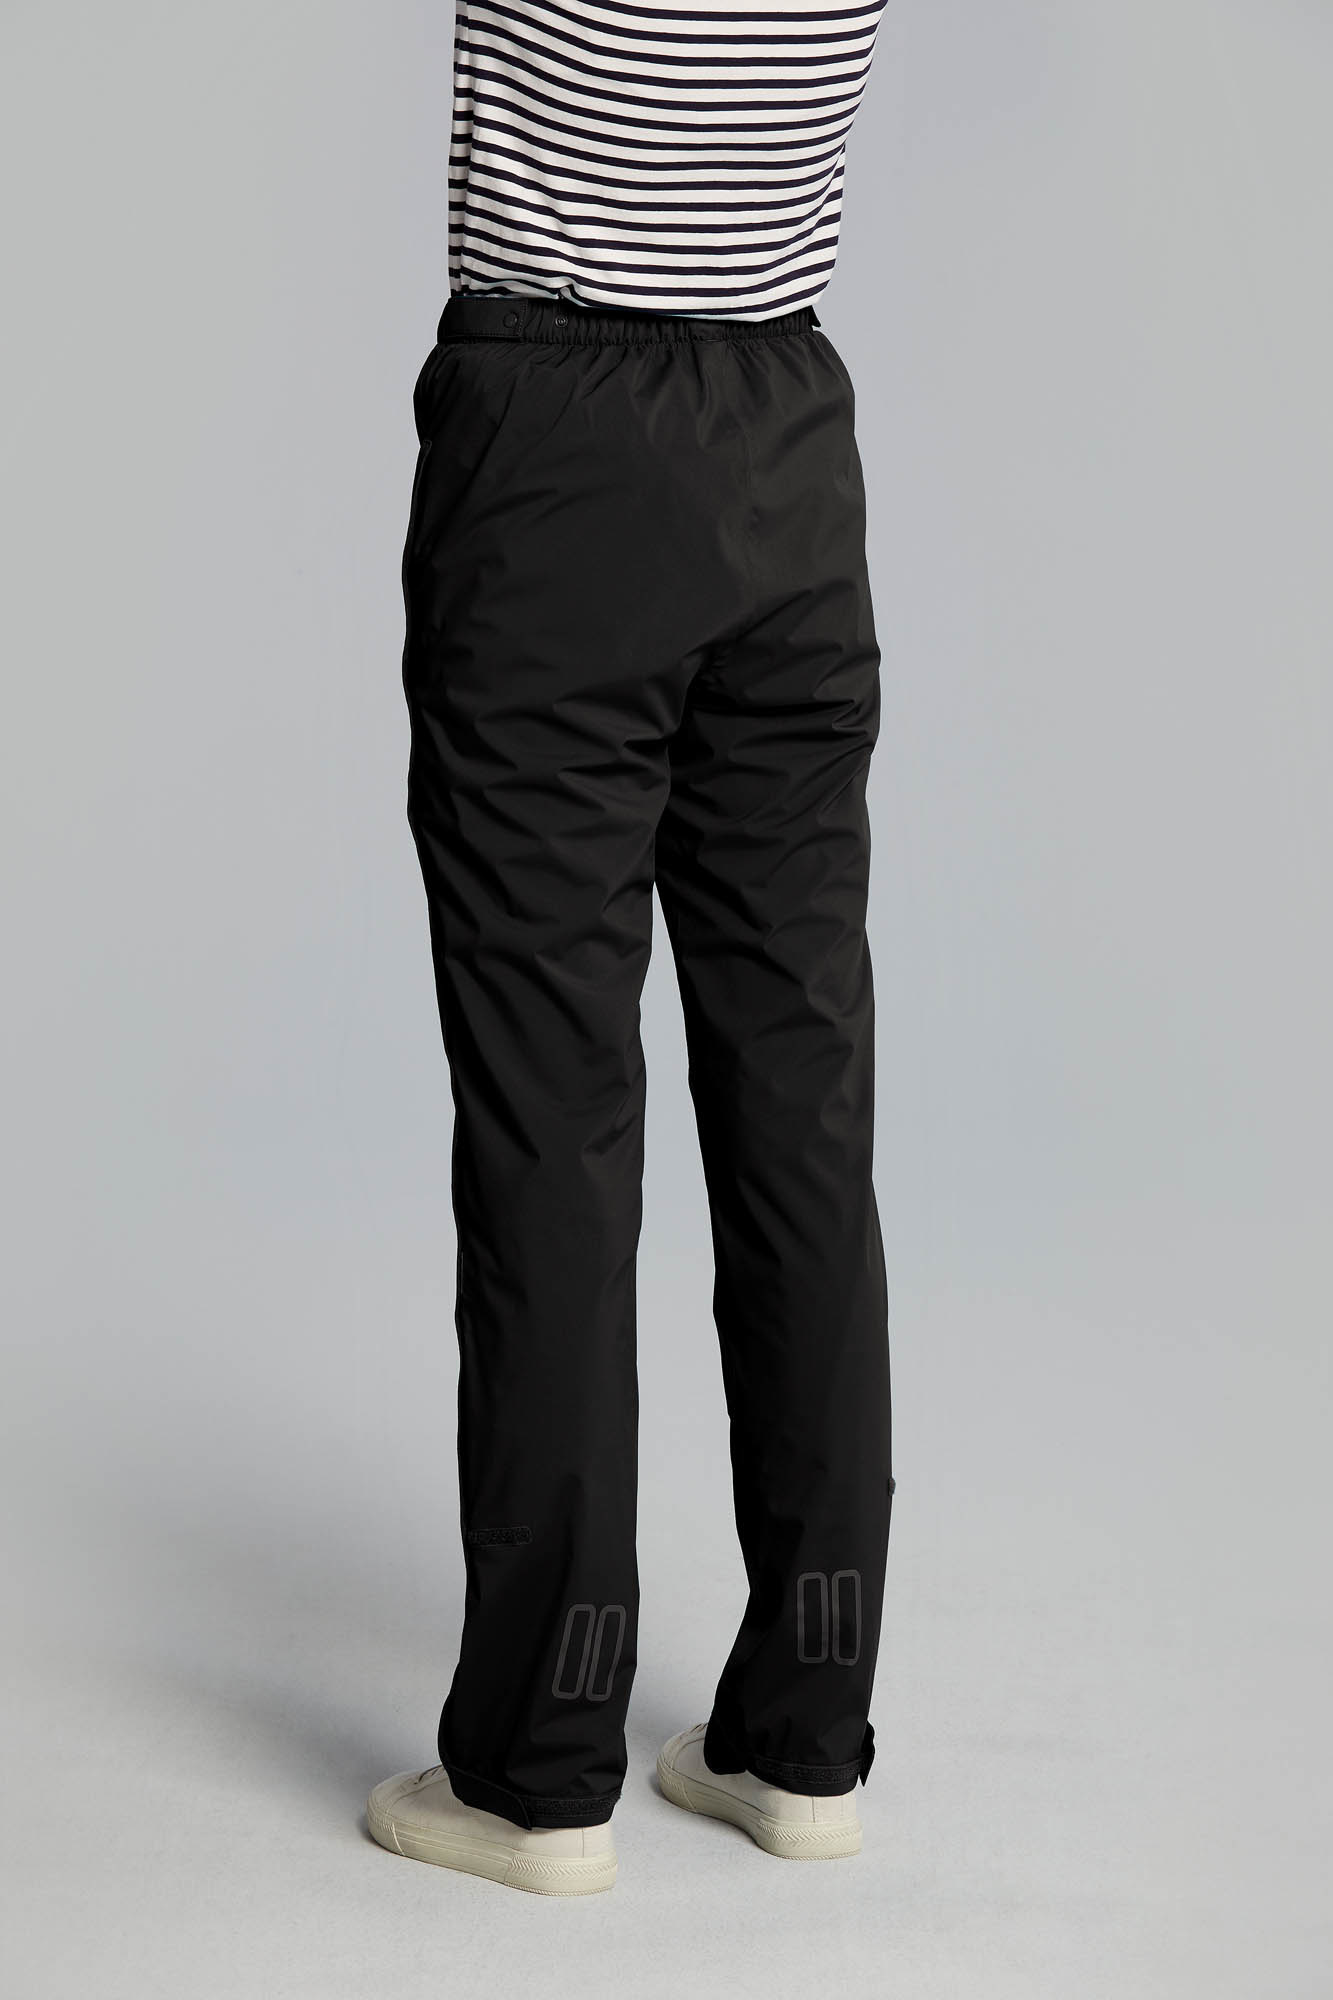 Temps Huimide Extérieur Wayleb Pantalon de Pluie Femme et Homme Unisexe Coupe-Vent Pantalon Imperméable Séchage Rapide Léger Pants avec 3 Poches Zippées pour Randonée 